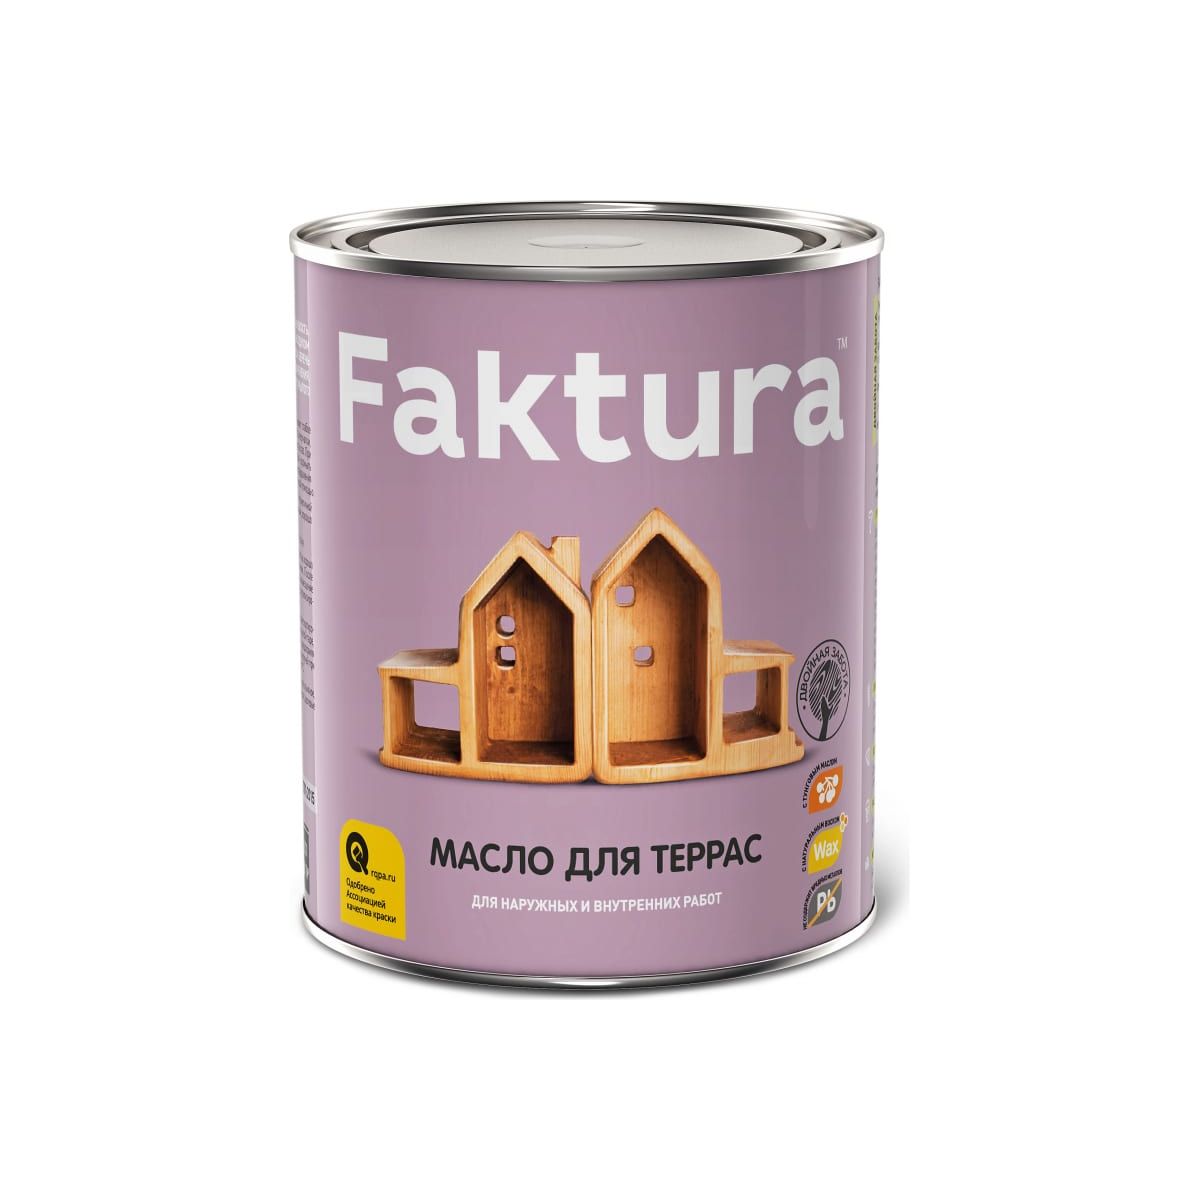 Масло Faktura для террас, 700 мл ароматическое масло с удобным дозатором